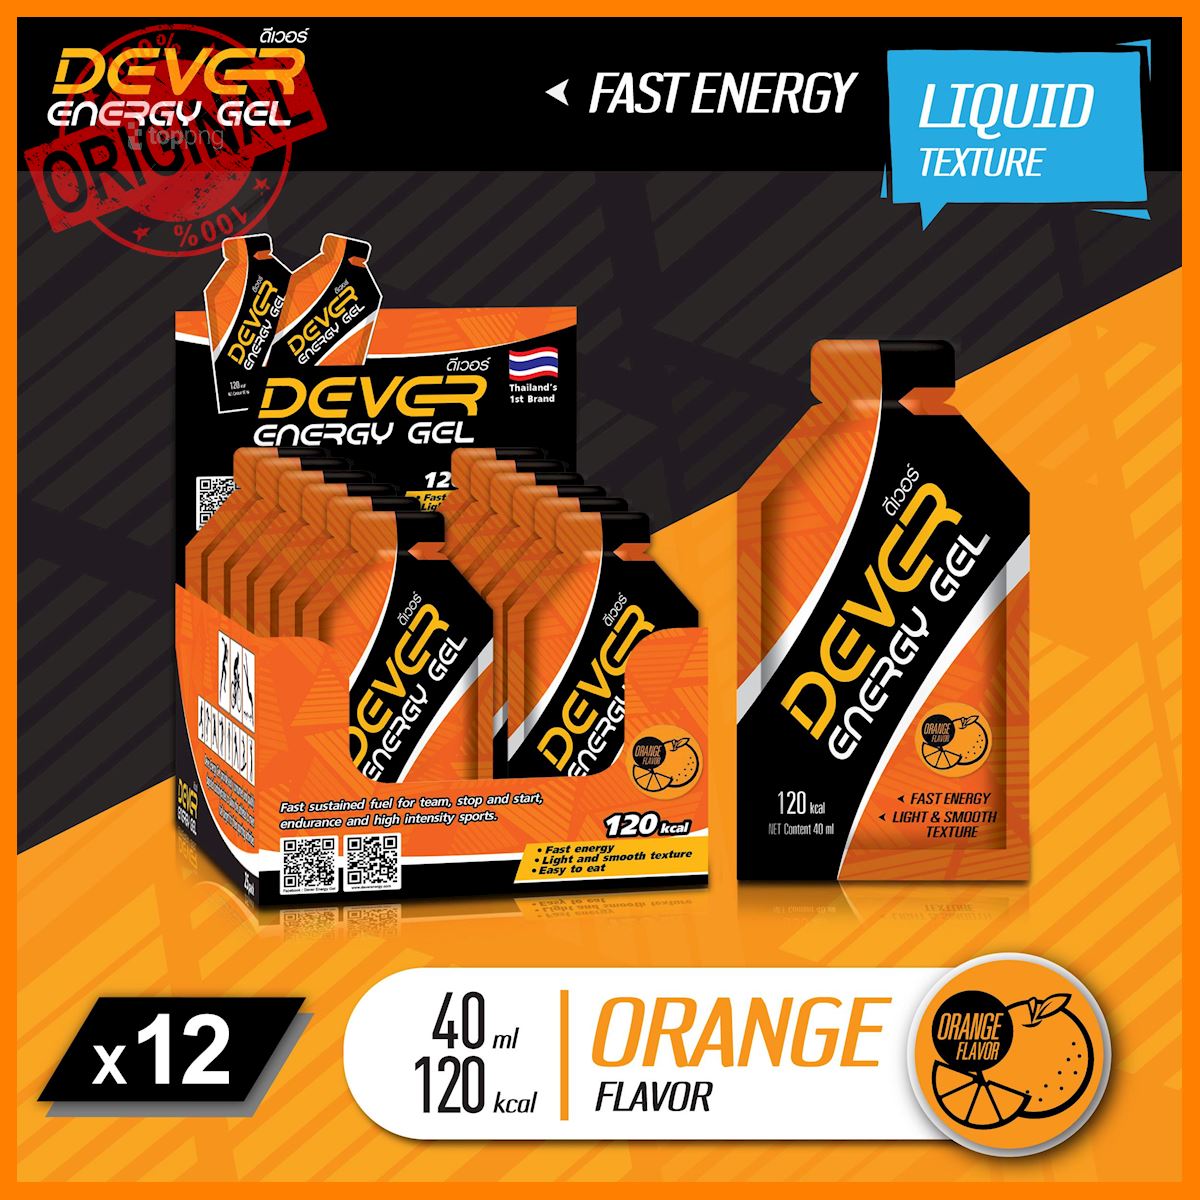 ของแท้ DEVER เจลให้พลังงาน สำหรับนักกีฬา รสส้ม 40 ml แพค 12 ซอง